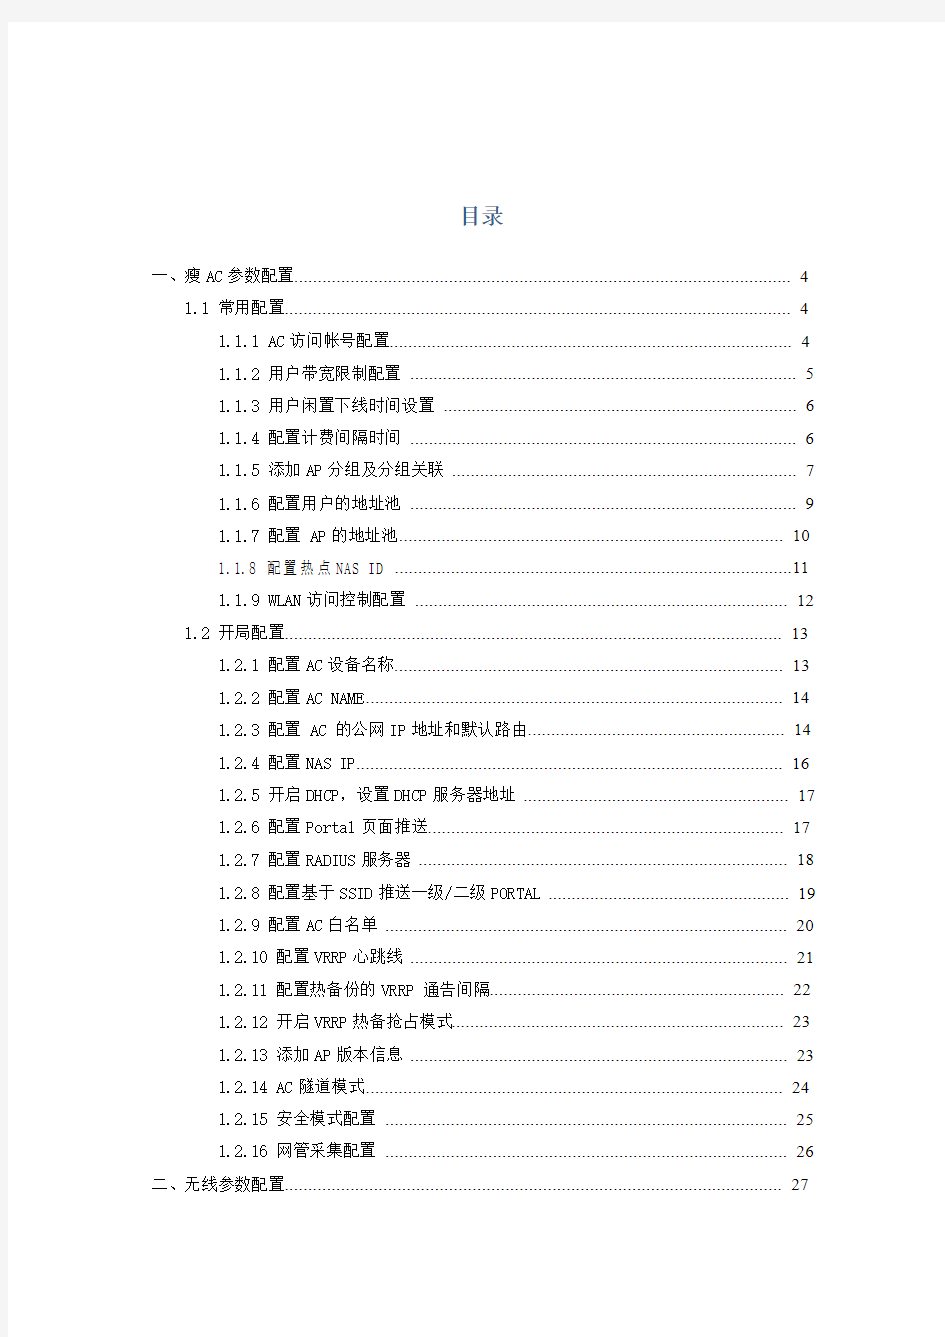 中国移动wlan设备参数配置规范(东北汉子)